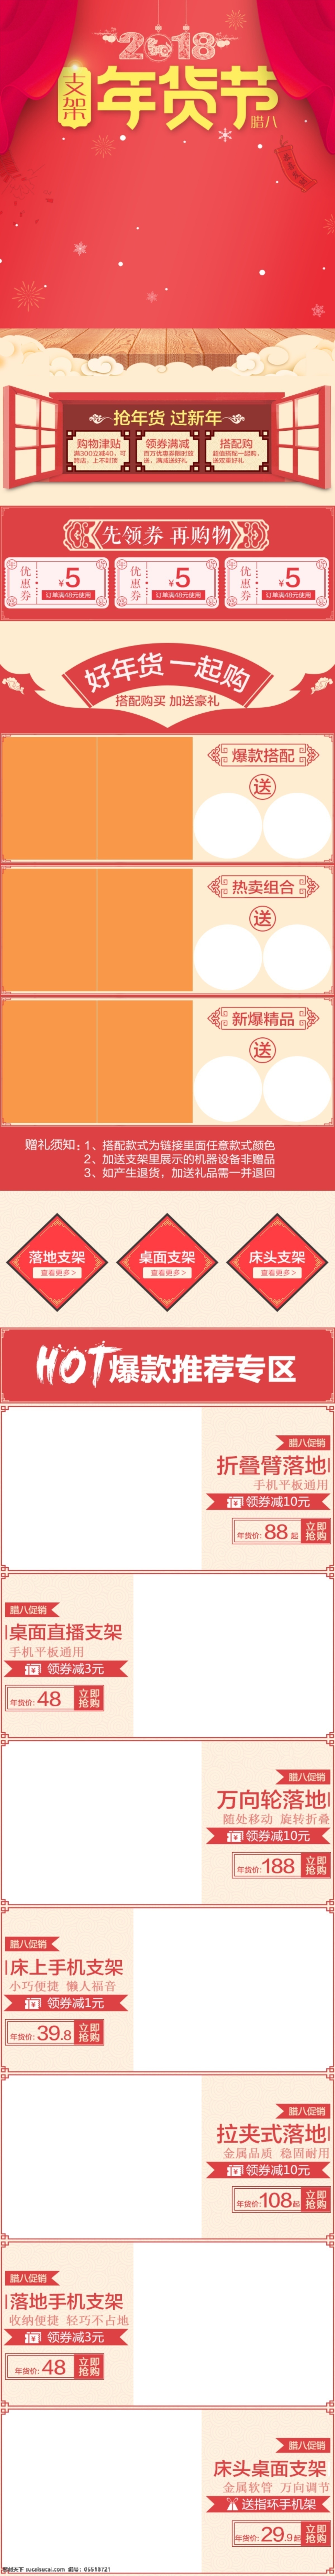 2018 年货 节 无线 端 首页 模板 红色 梅花 年货节 手机支架 无线端 新年 雪花 中国风